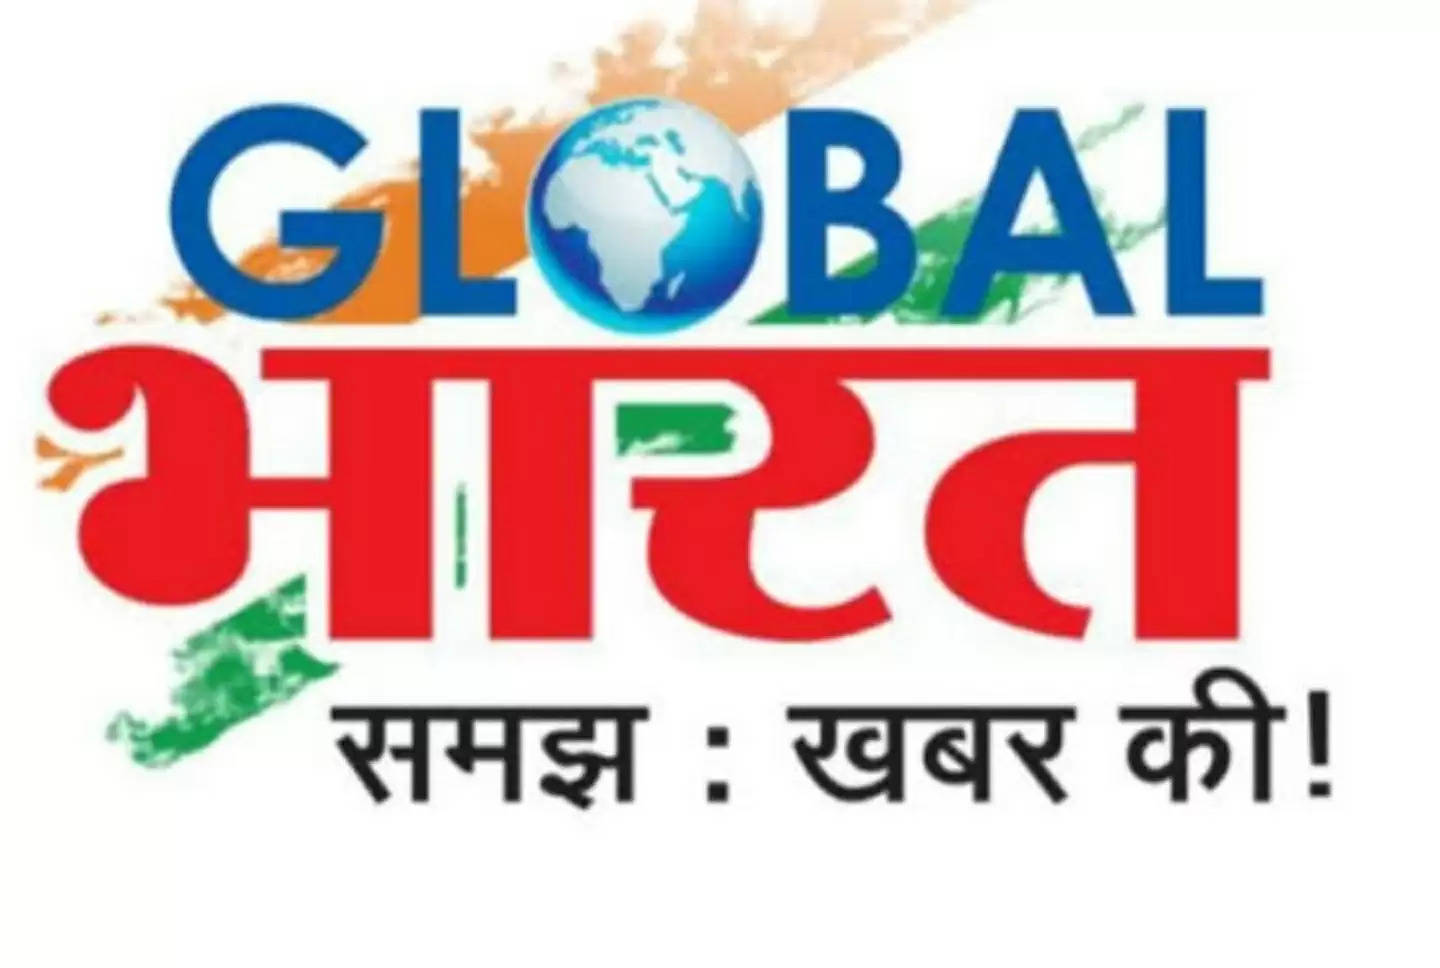 ग्लोबल भारत न्यूज